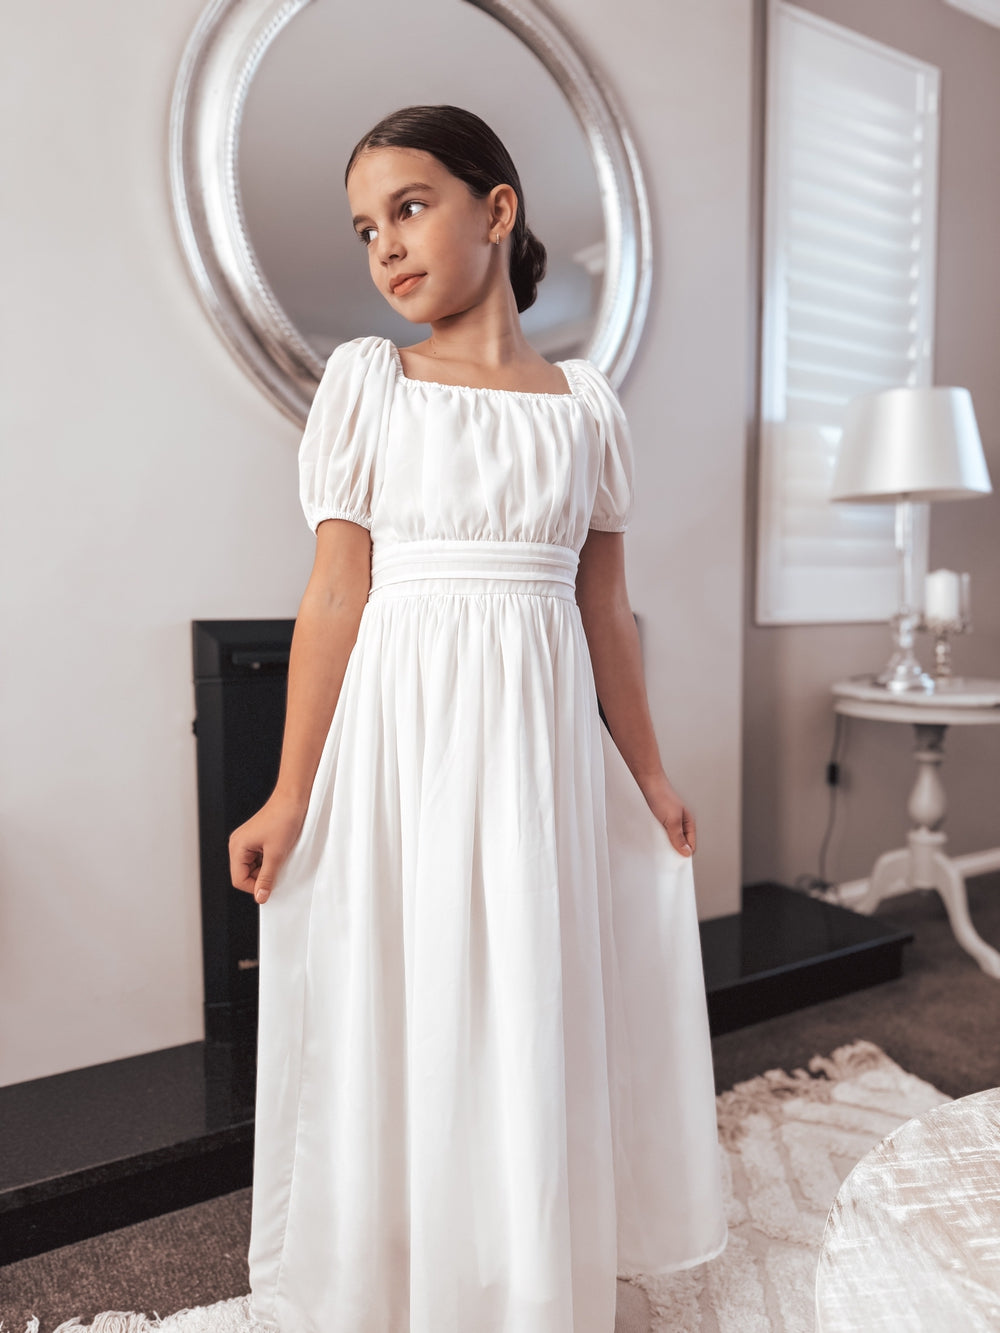 Emilia Girls White Dress - Communion Dresses